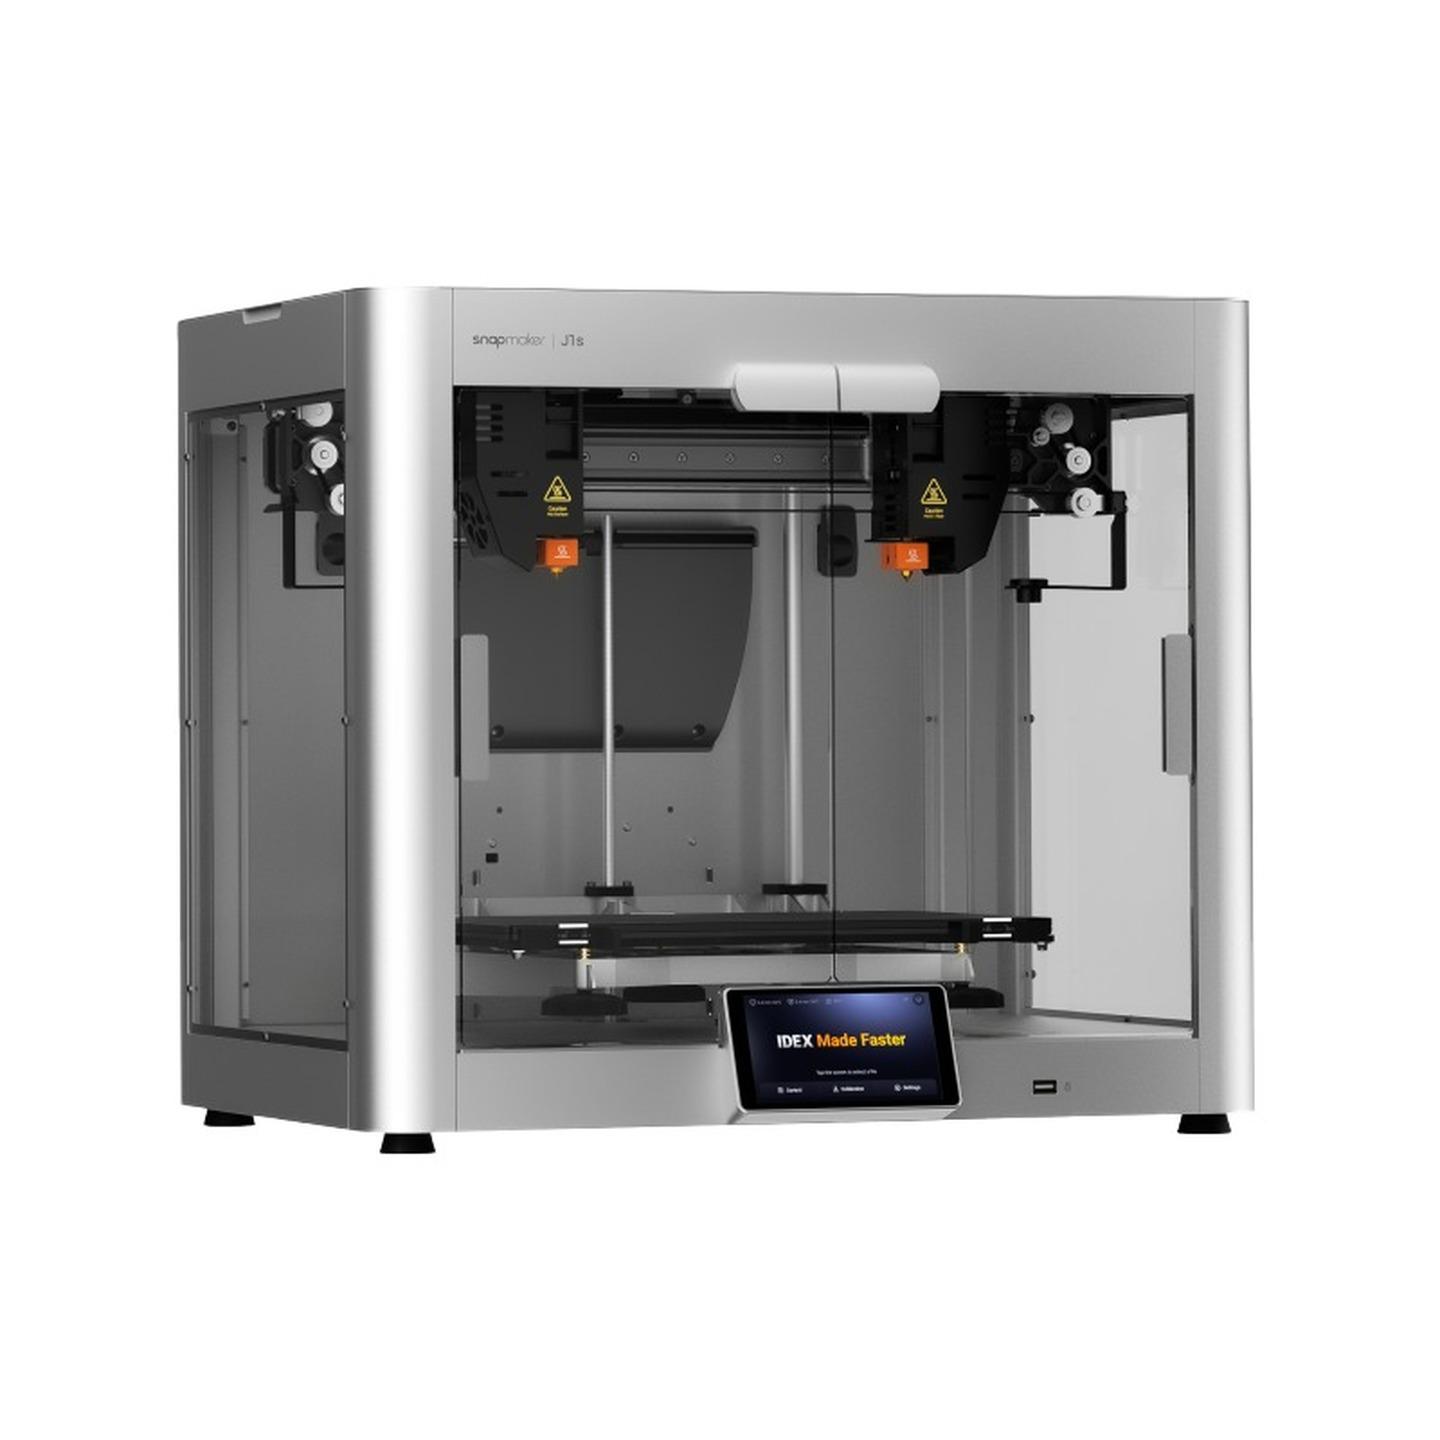 Snapmaker J1s IDEX FDM 3D Printer